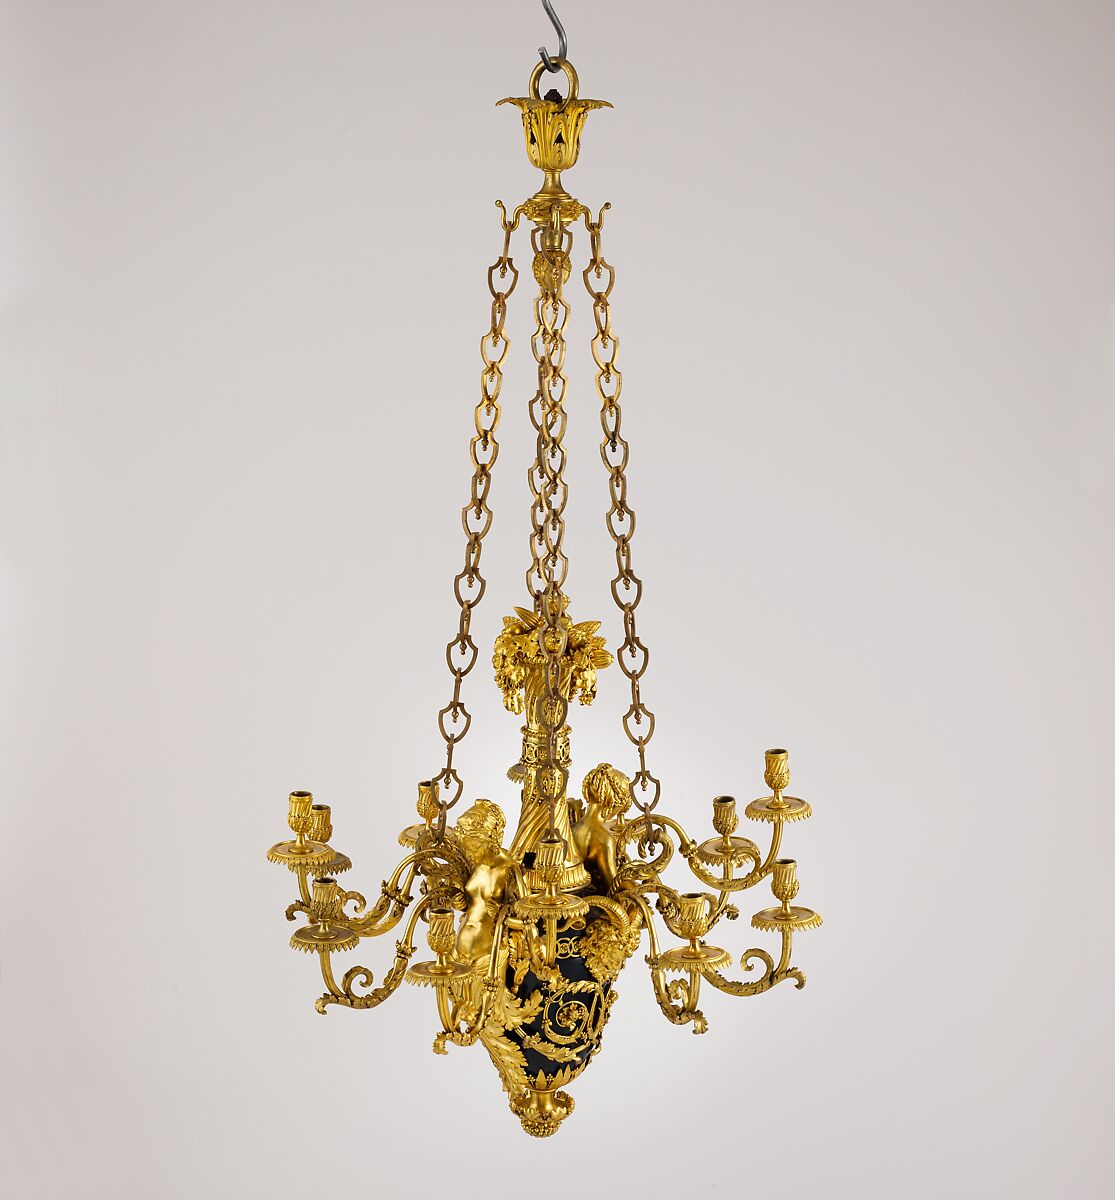 Twelve-light chandelier (lustre), Attributed to Pierre Rémond (French, Paris 1747–1812 Paris), Varnished copper alloy, gilt bronze, French, Paris 